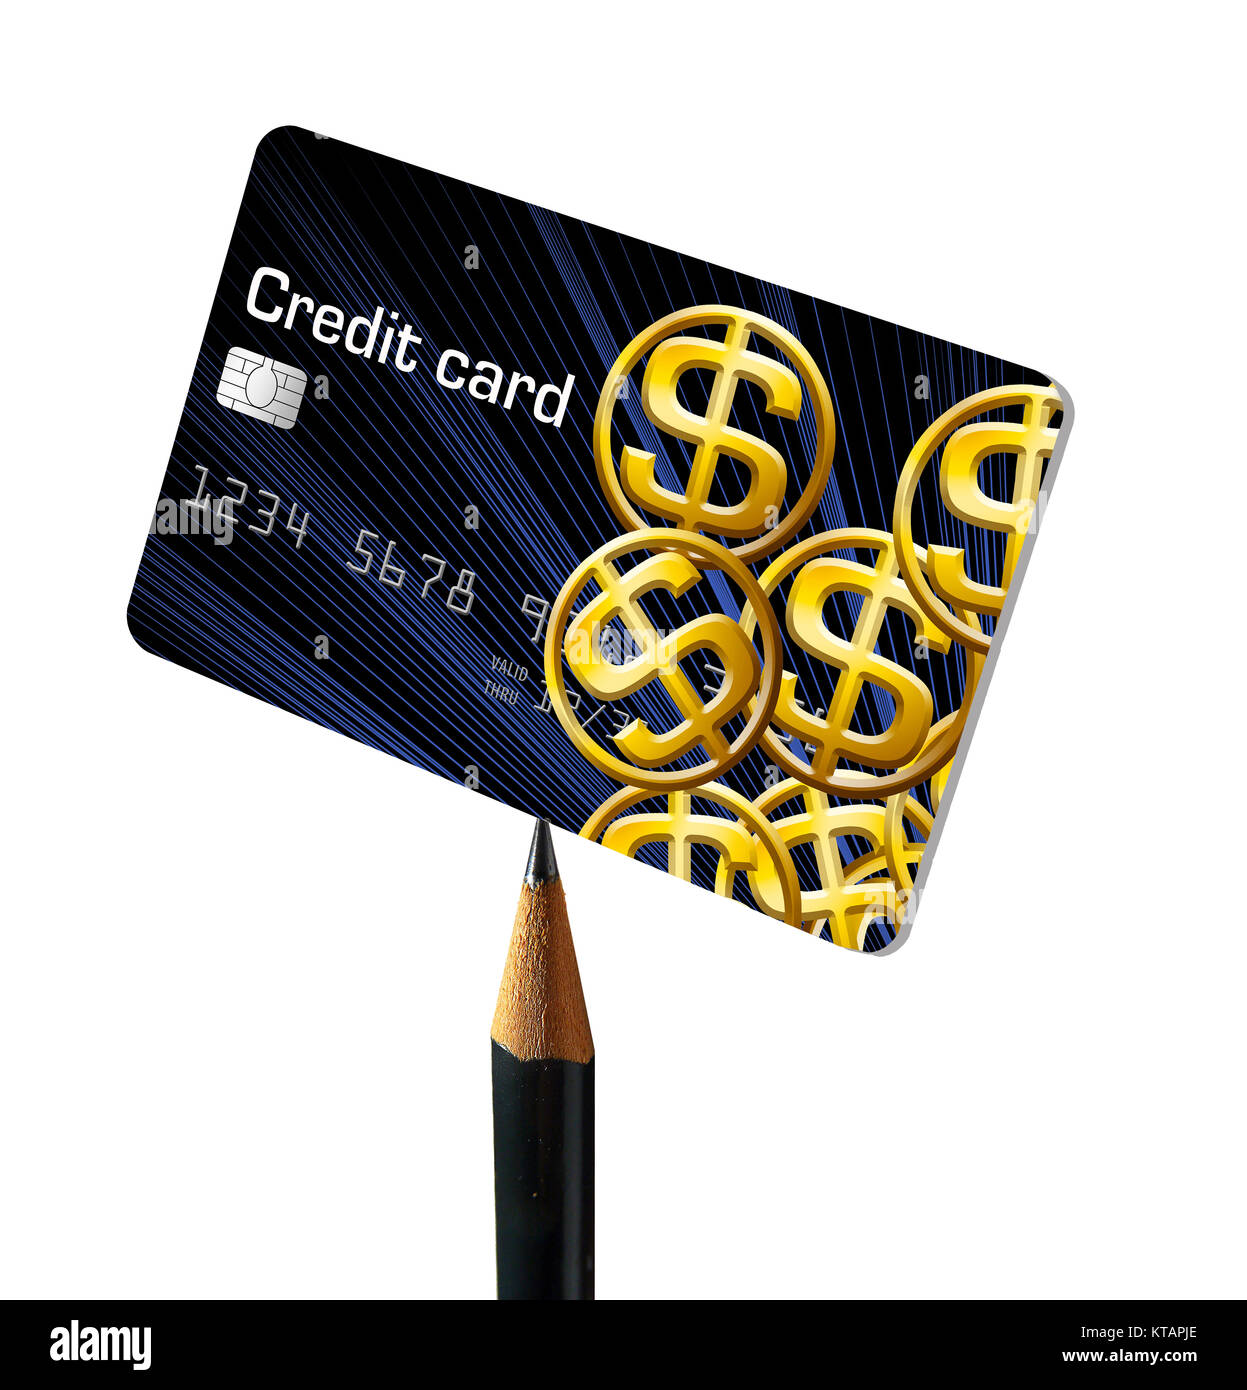 Bargeldlose gehen. Die Idee ist das Thema dieses 3-D-Abbildung Kreditkarten ersetzen die Notwendigkeit Geld zu tragen. Stockfoto